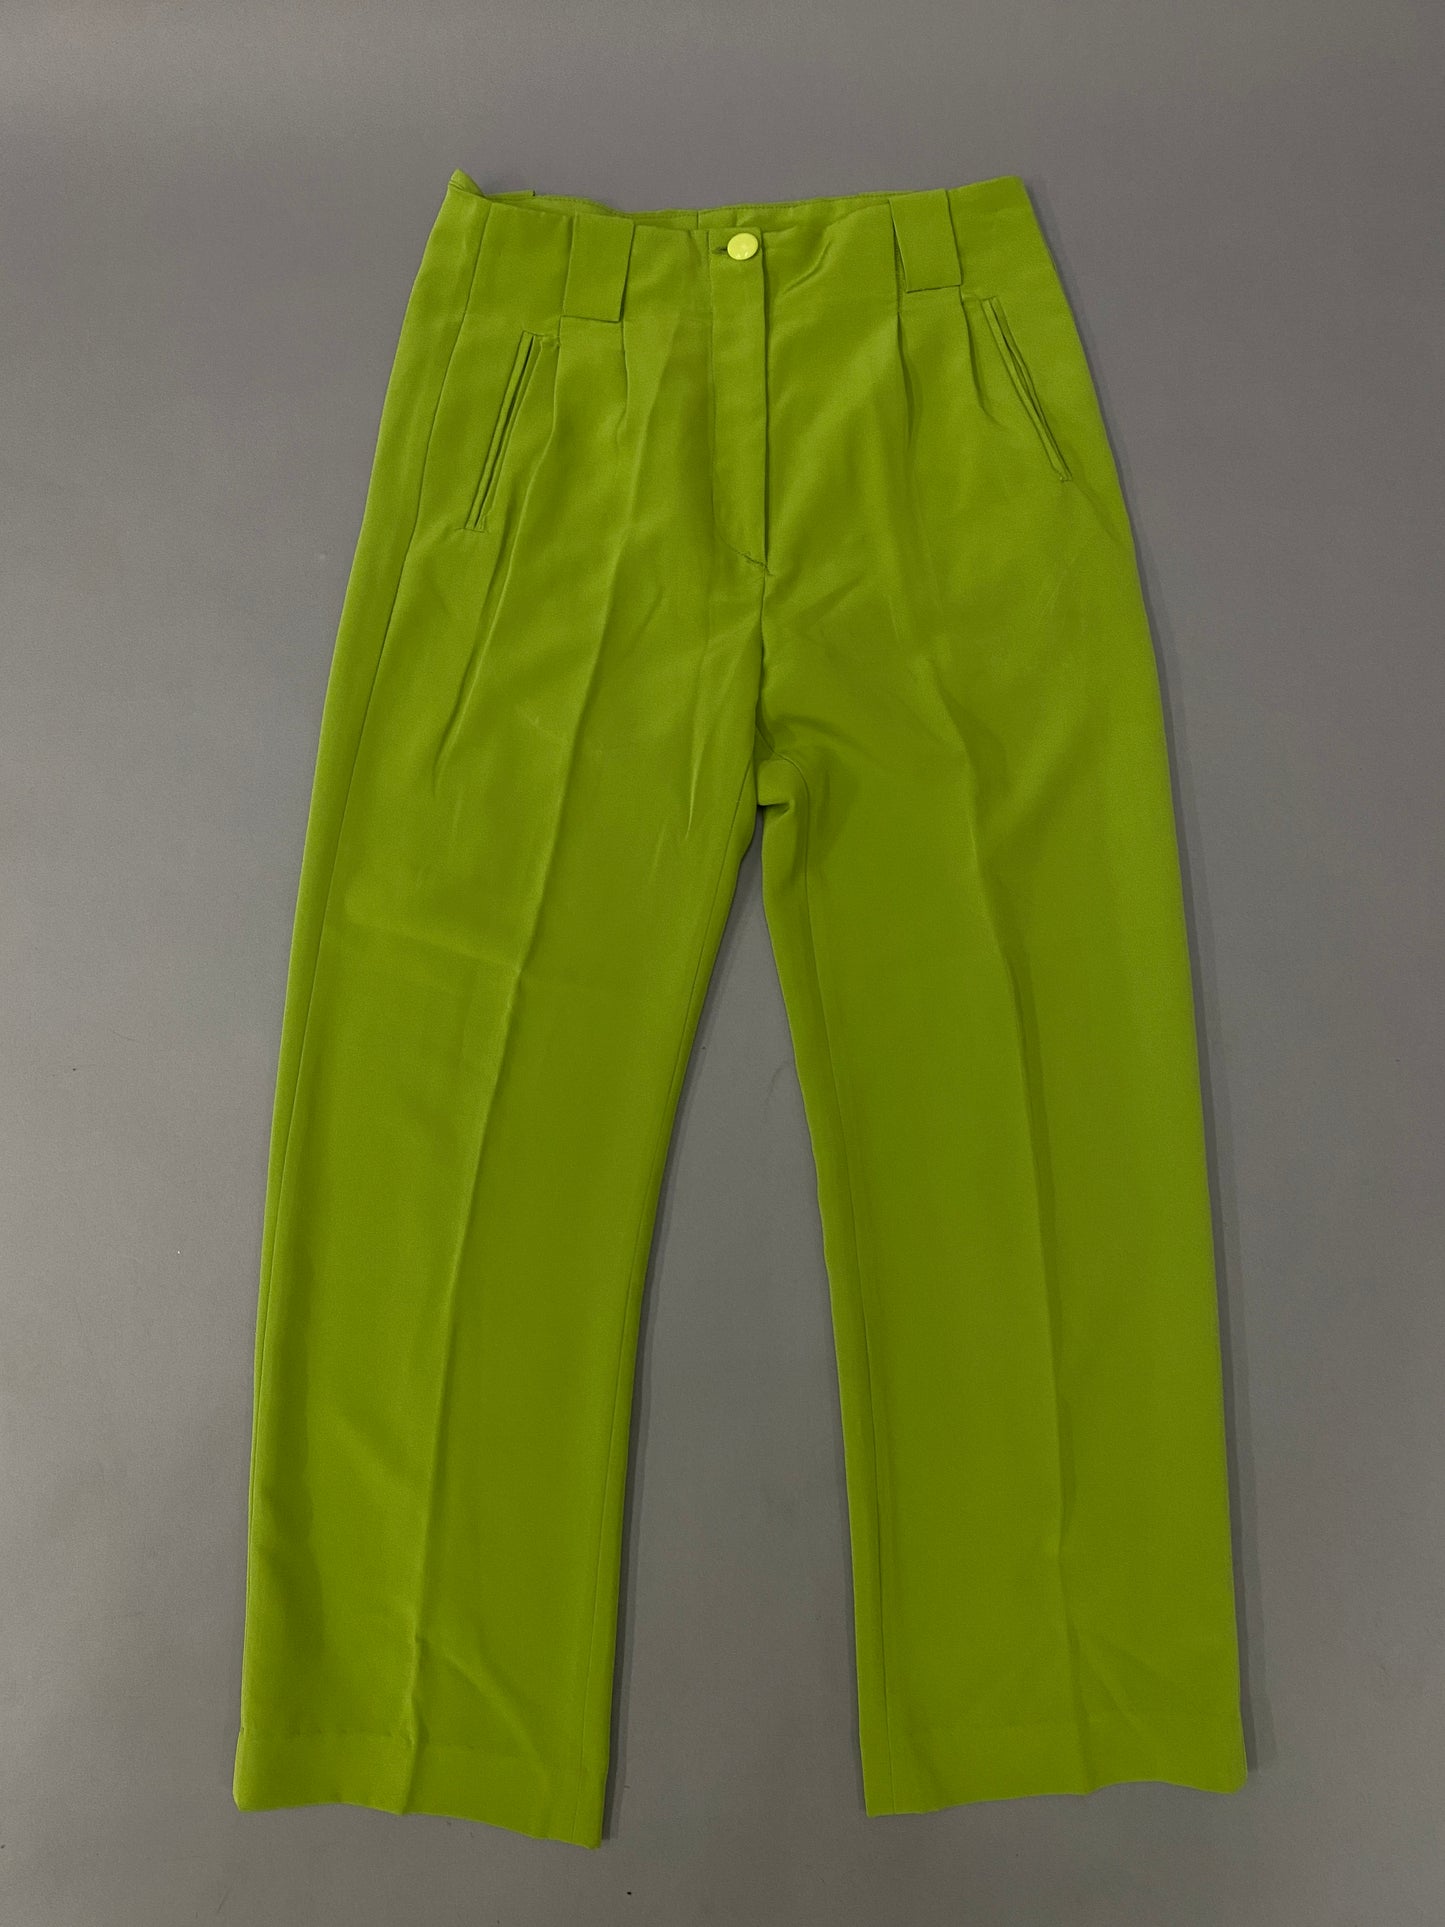 Neon 80's pants - 30